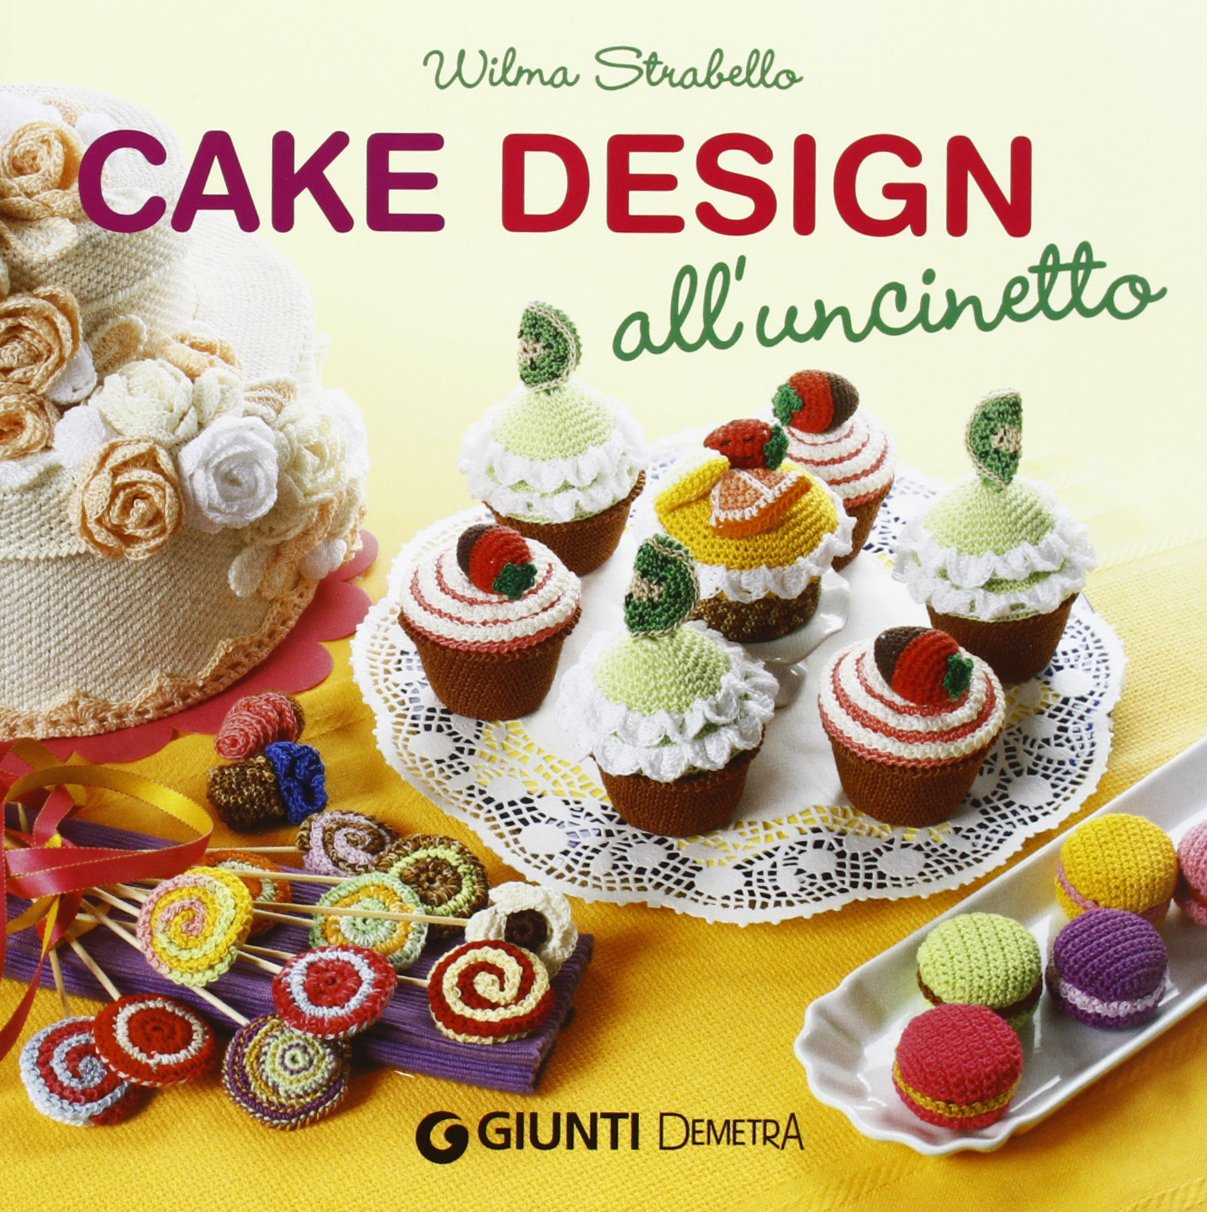 Cake design all'uncinetto